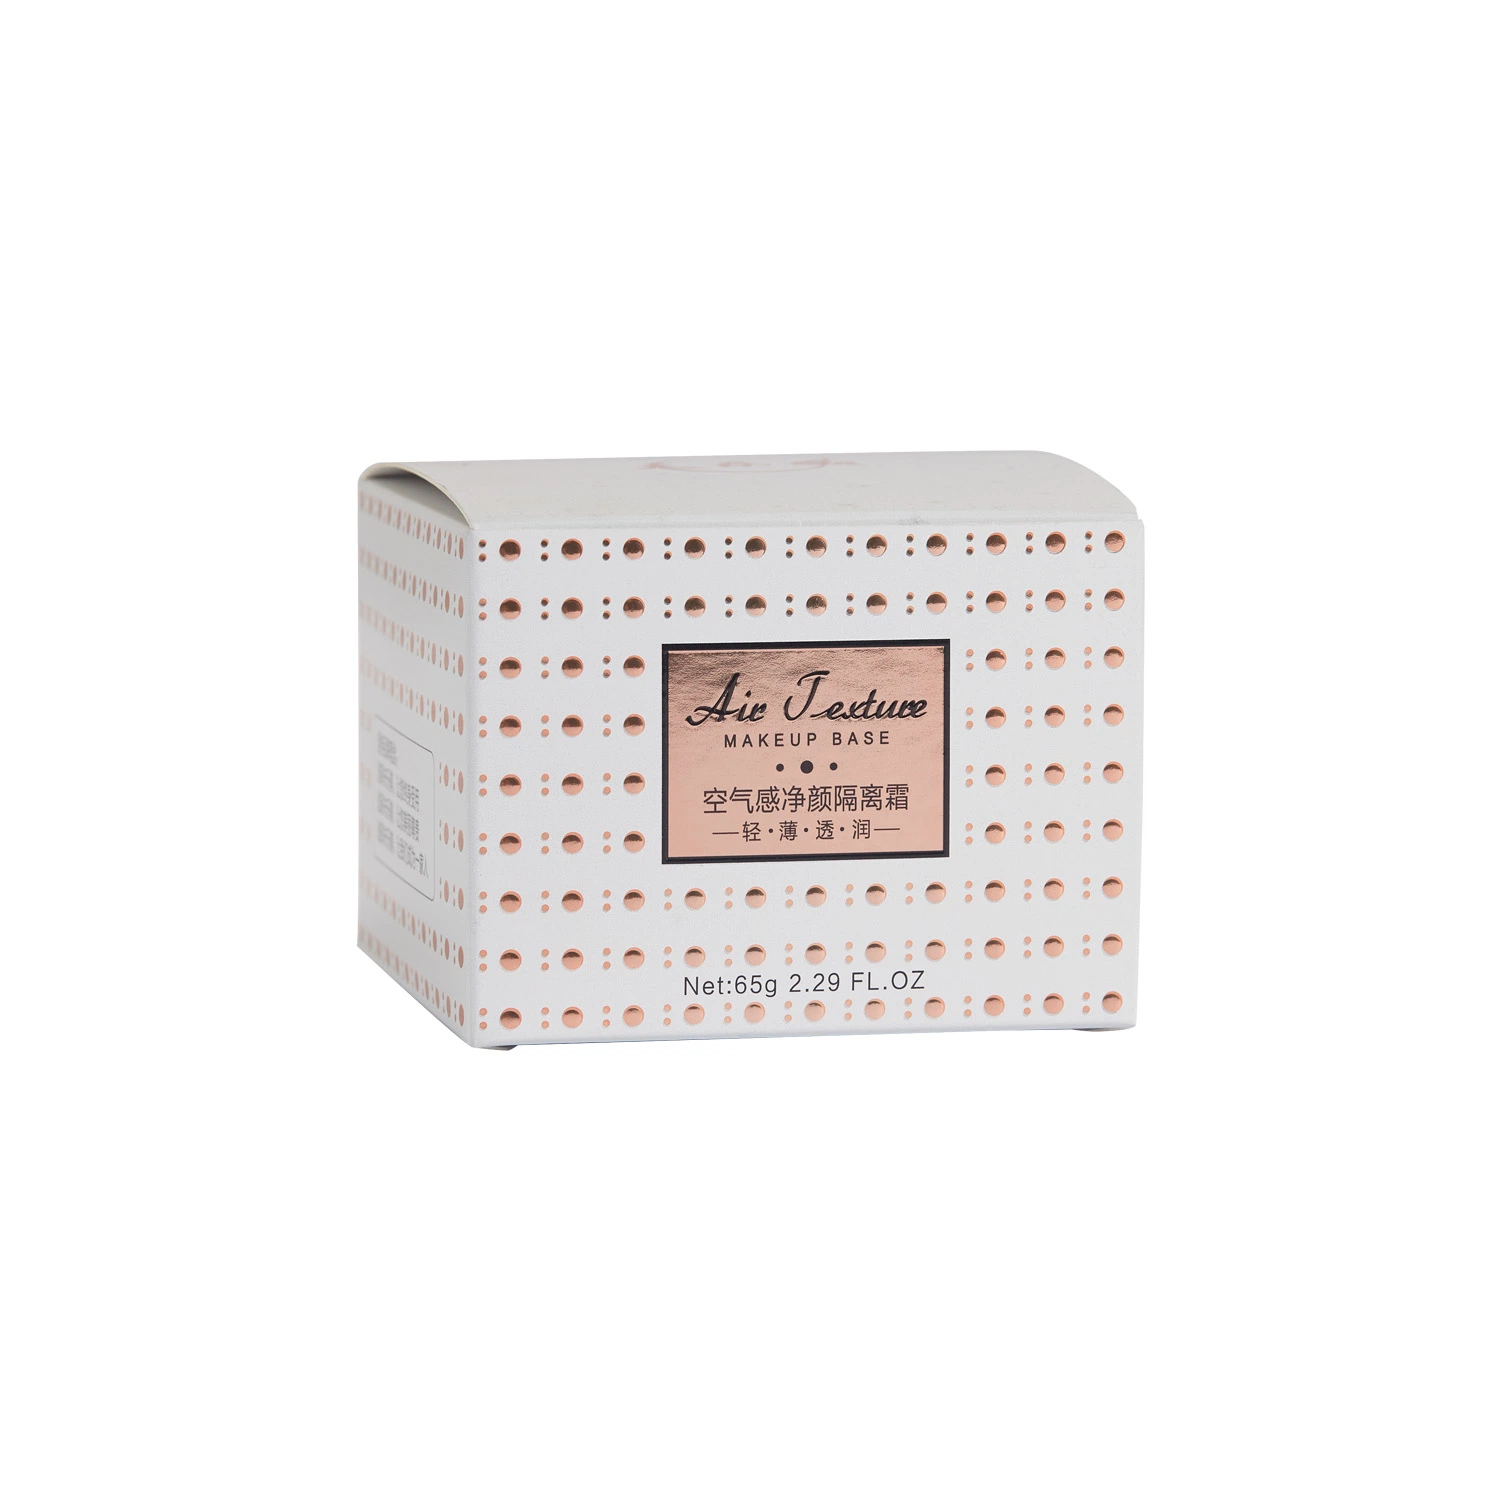 Impresión personalizada con tapa y pieza de espuma Regalo de cuidado de la piel de lujo Caja para Embalaje cosmético Maquillaje Caja de cartón de belleza Caja